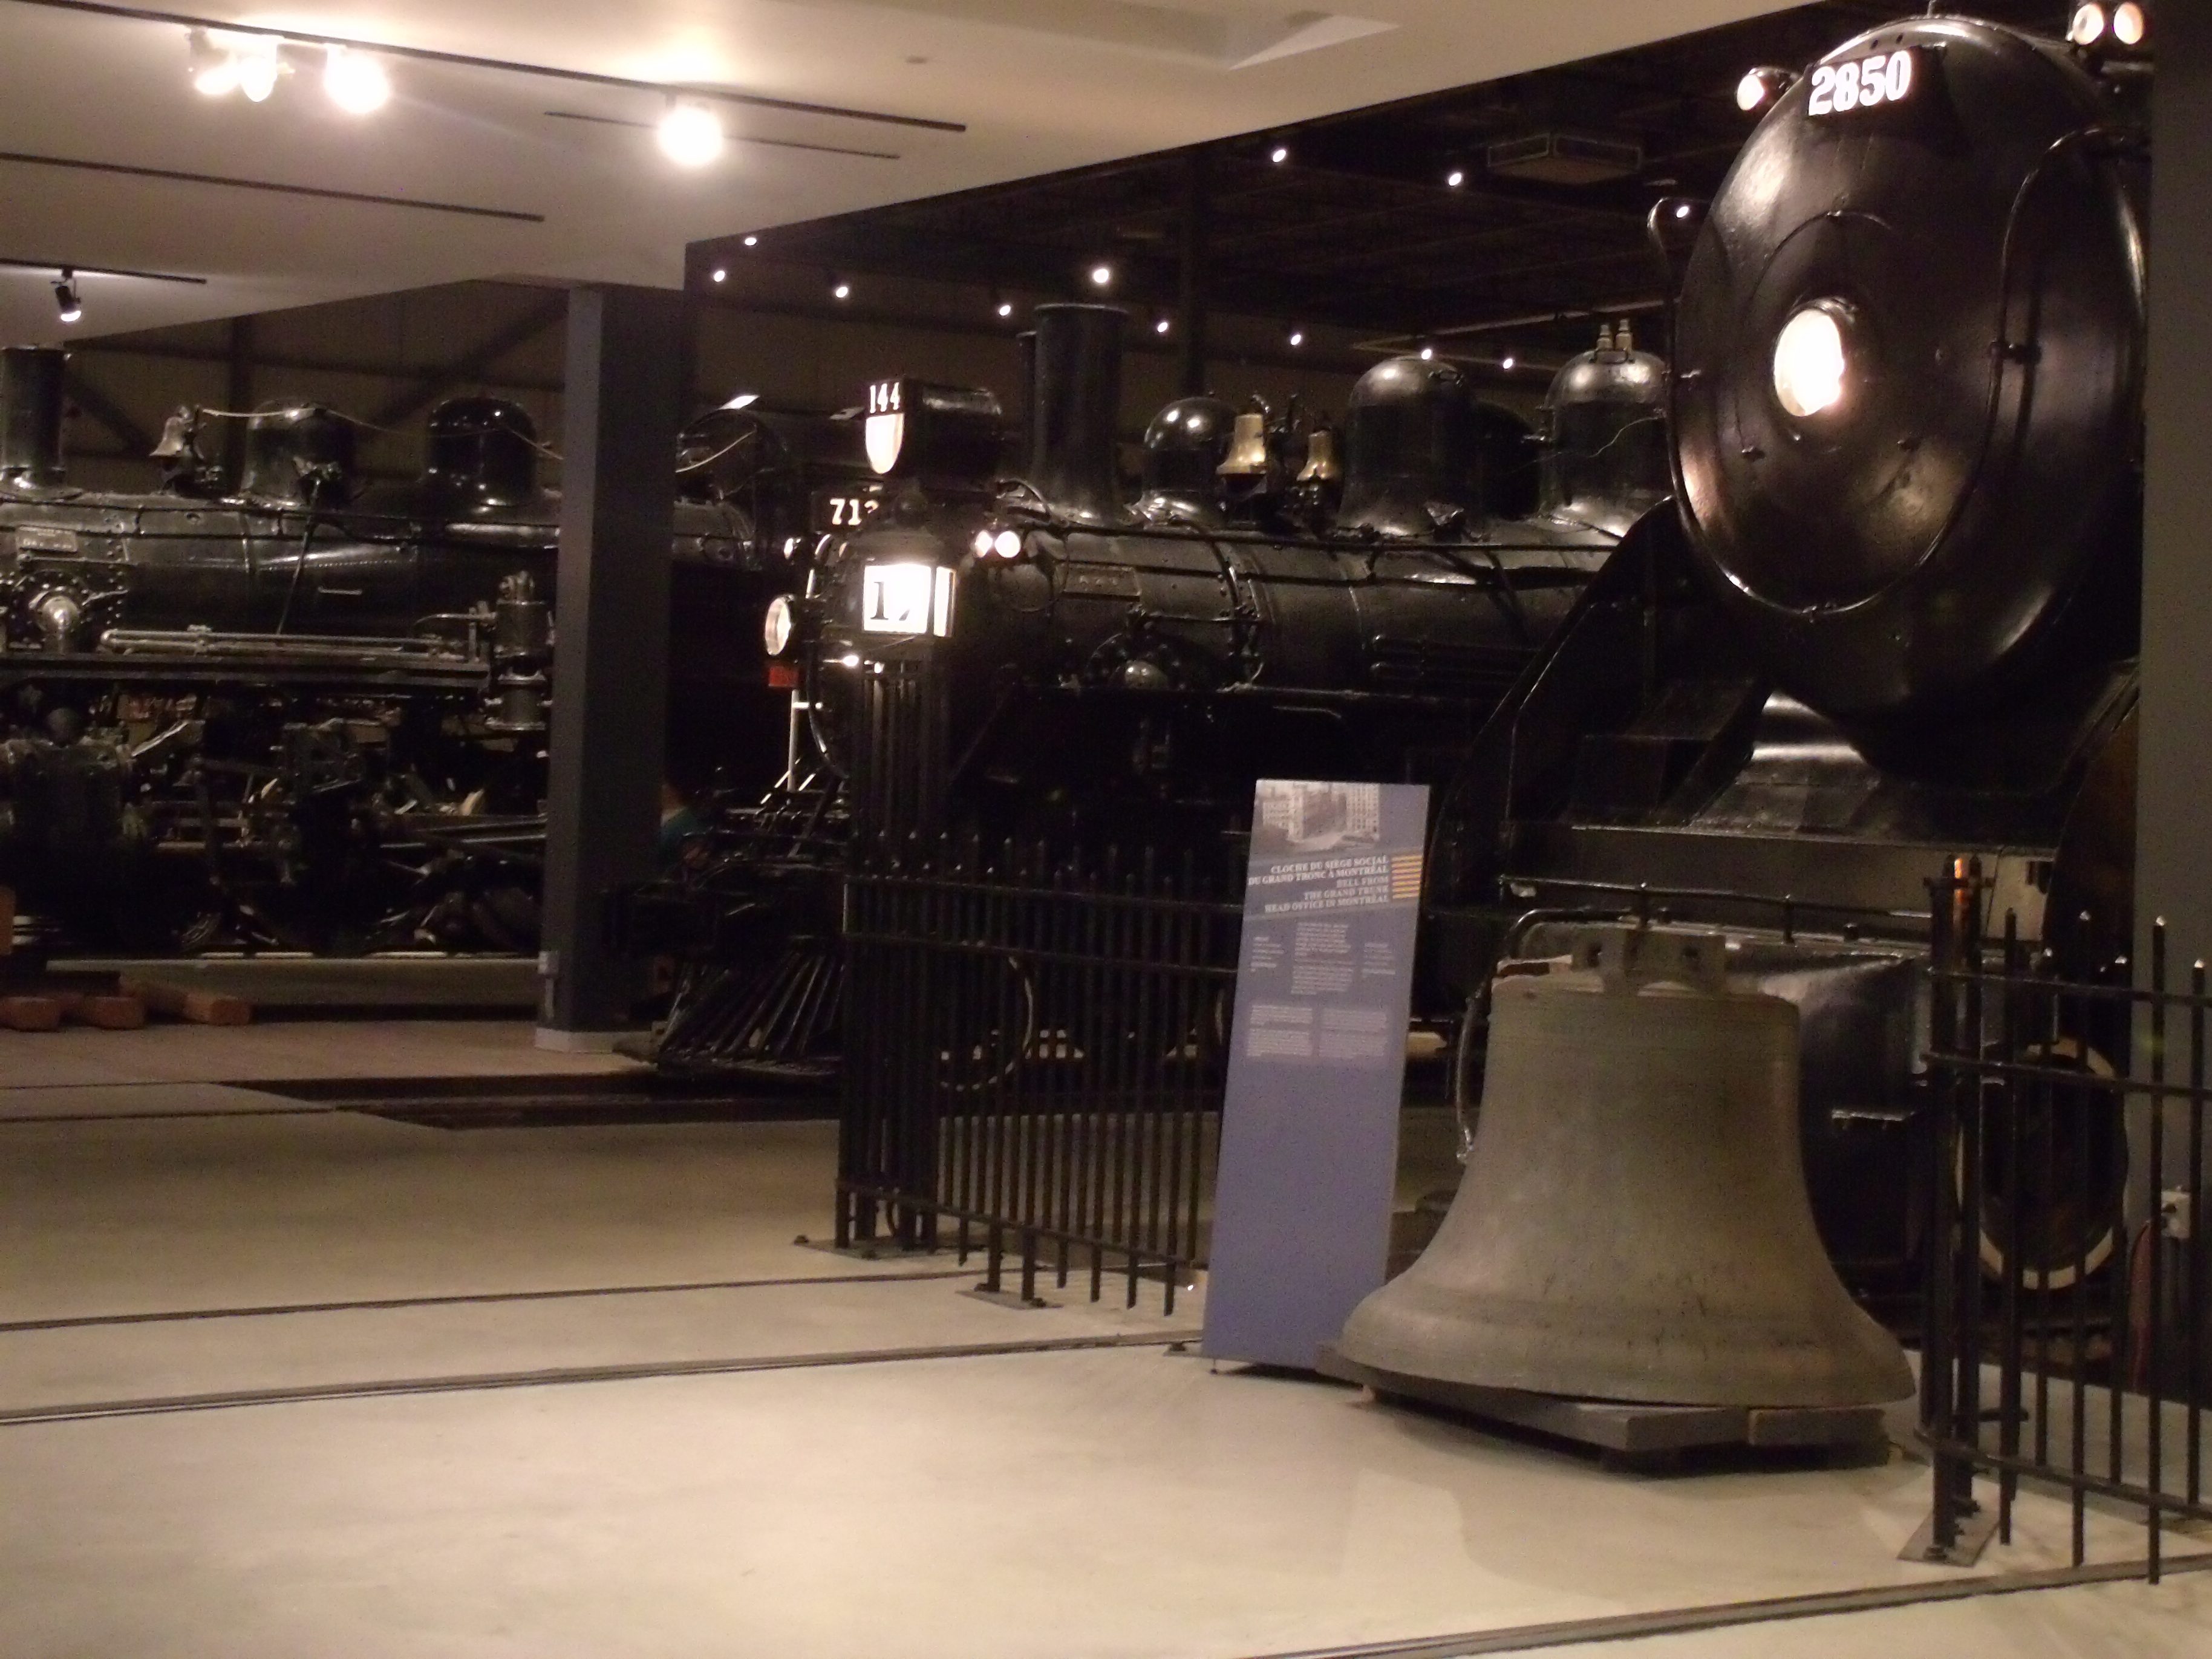 Des locomotives et posé au sol, la grosse cloche de la gare centrale de Montréal (anciennement)